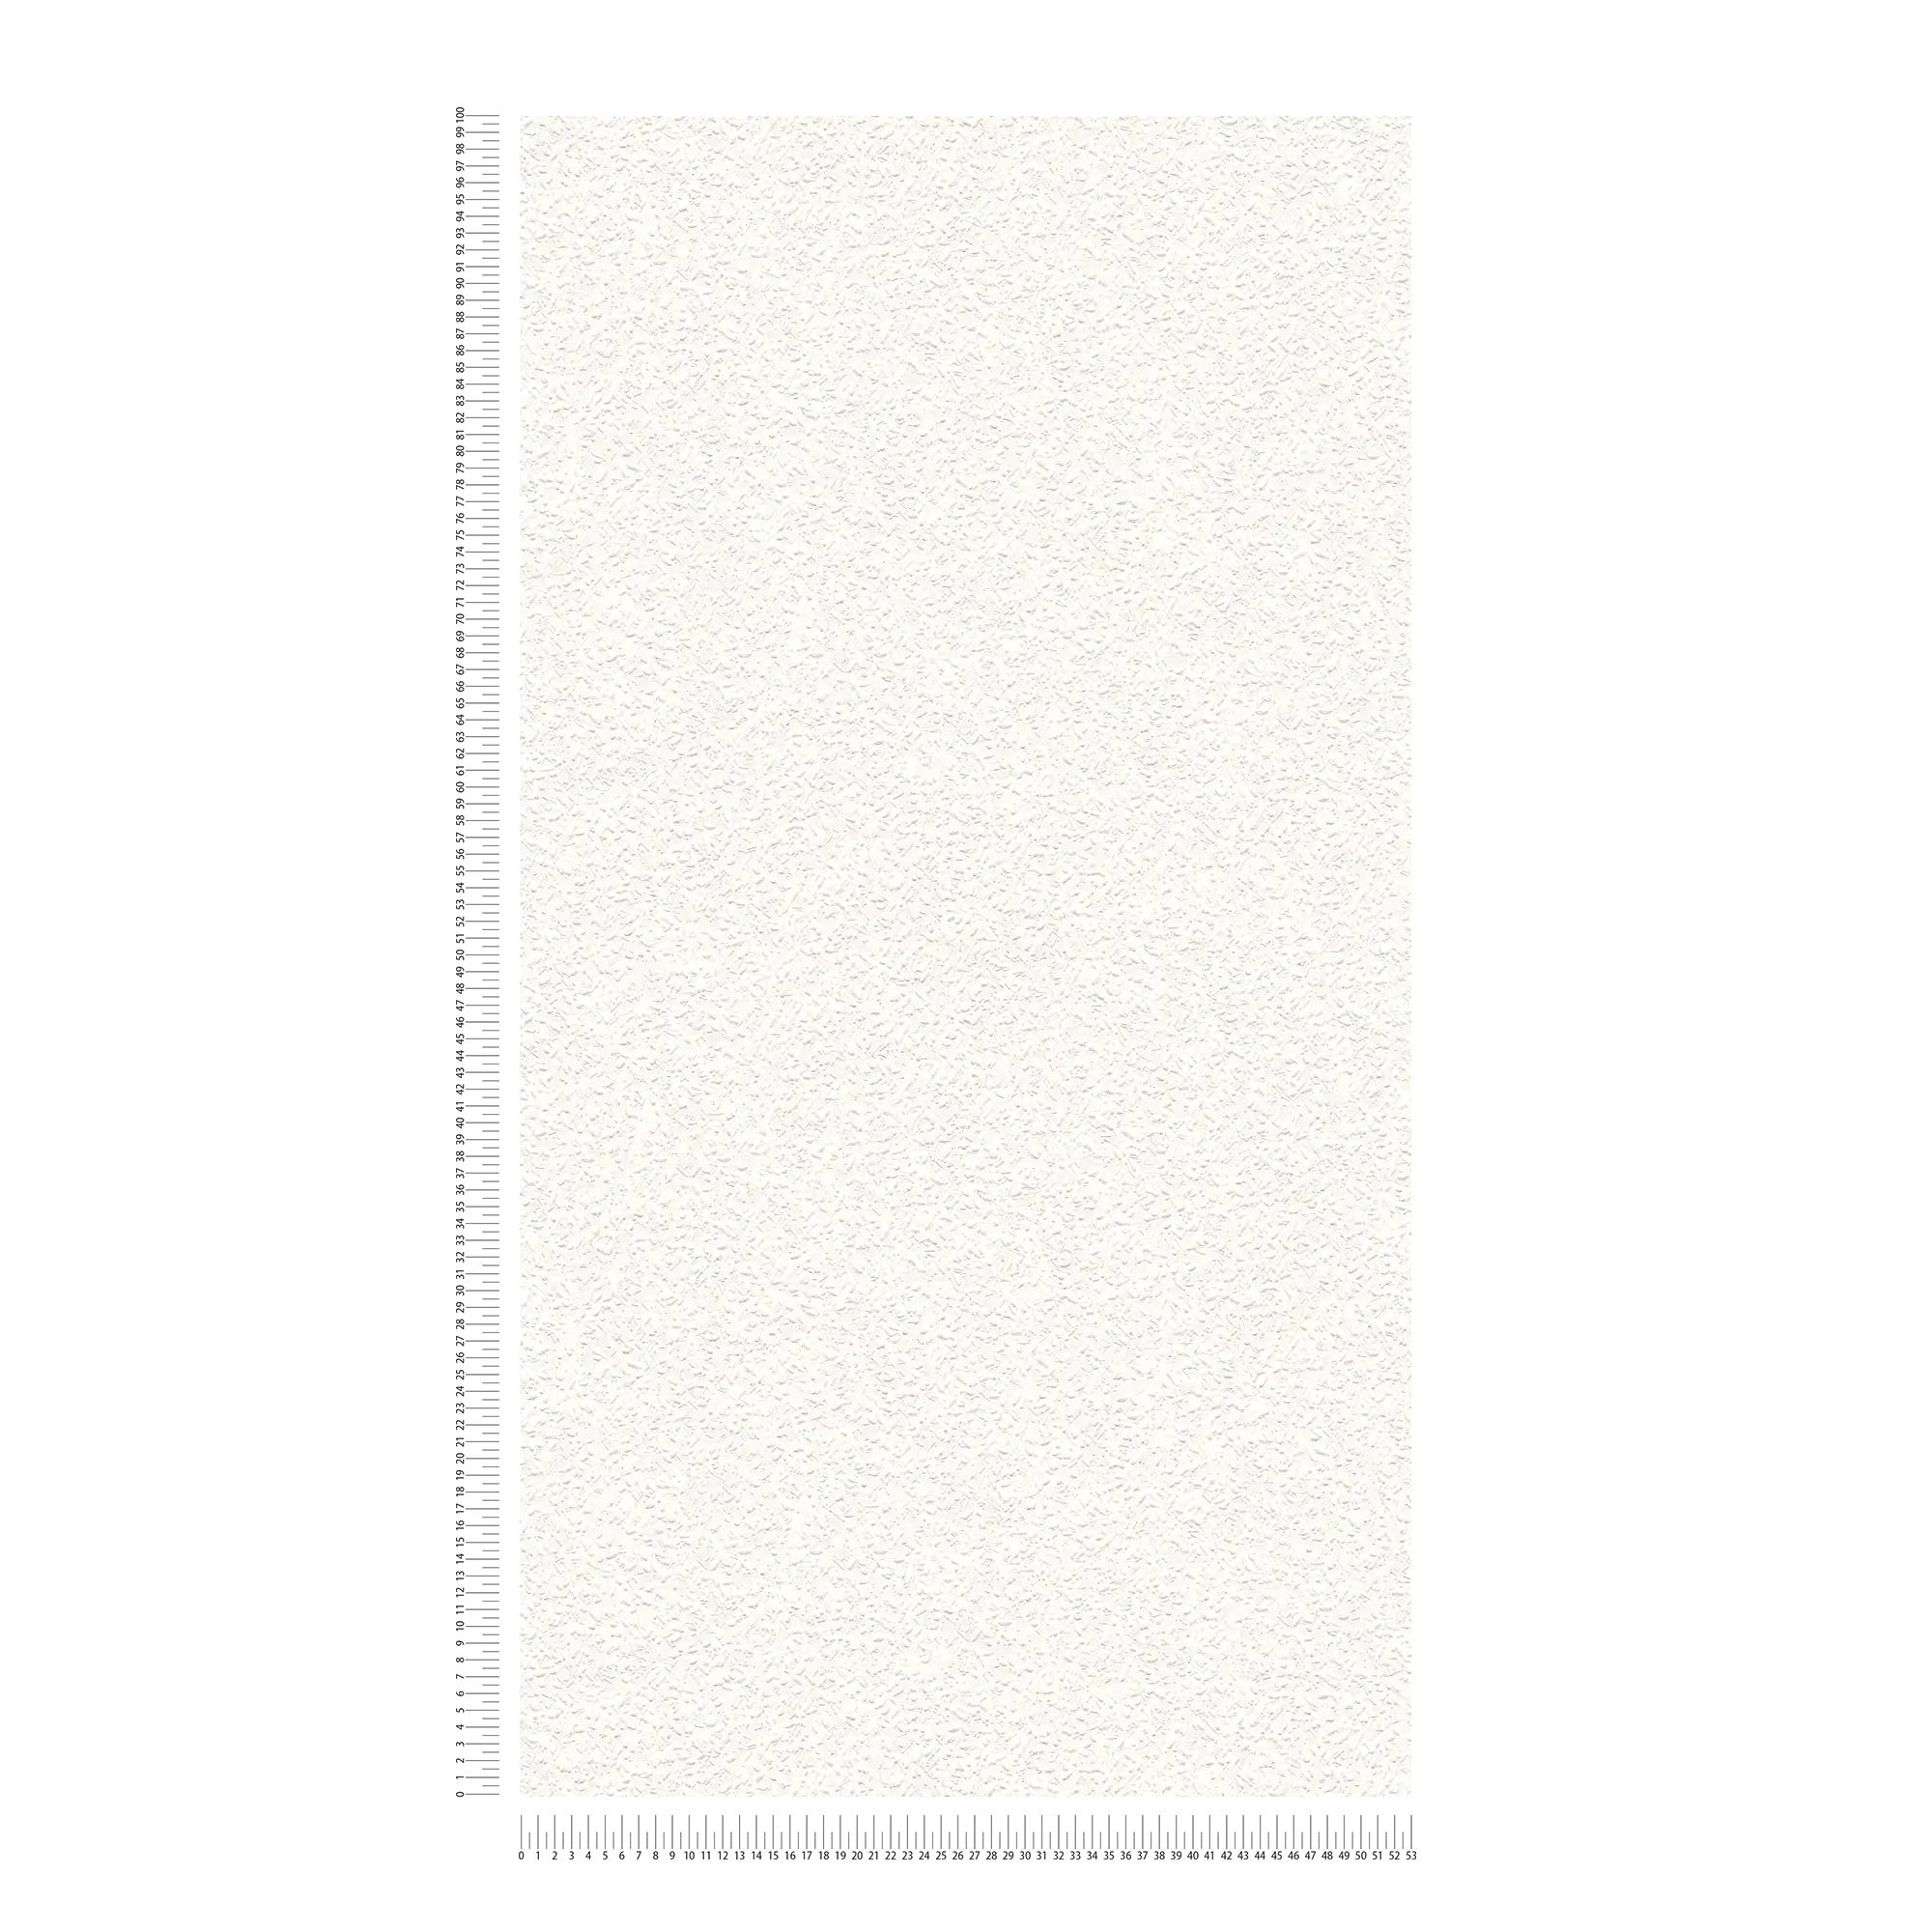             Papierbehang houtsnipperlook in wit met structuurpatroon
        